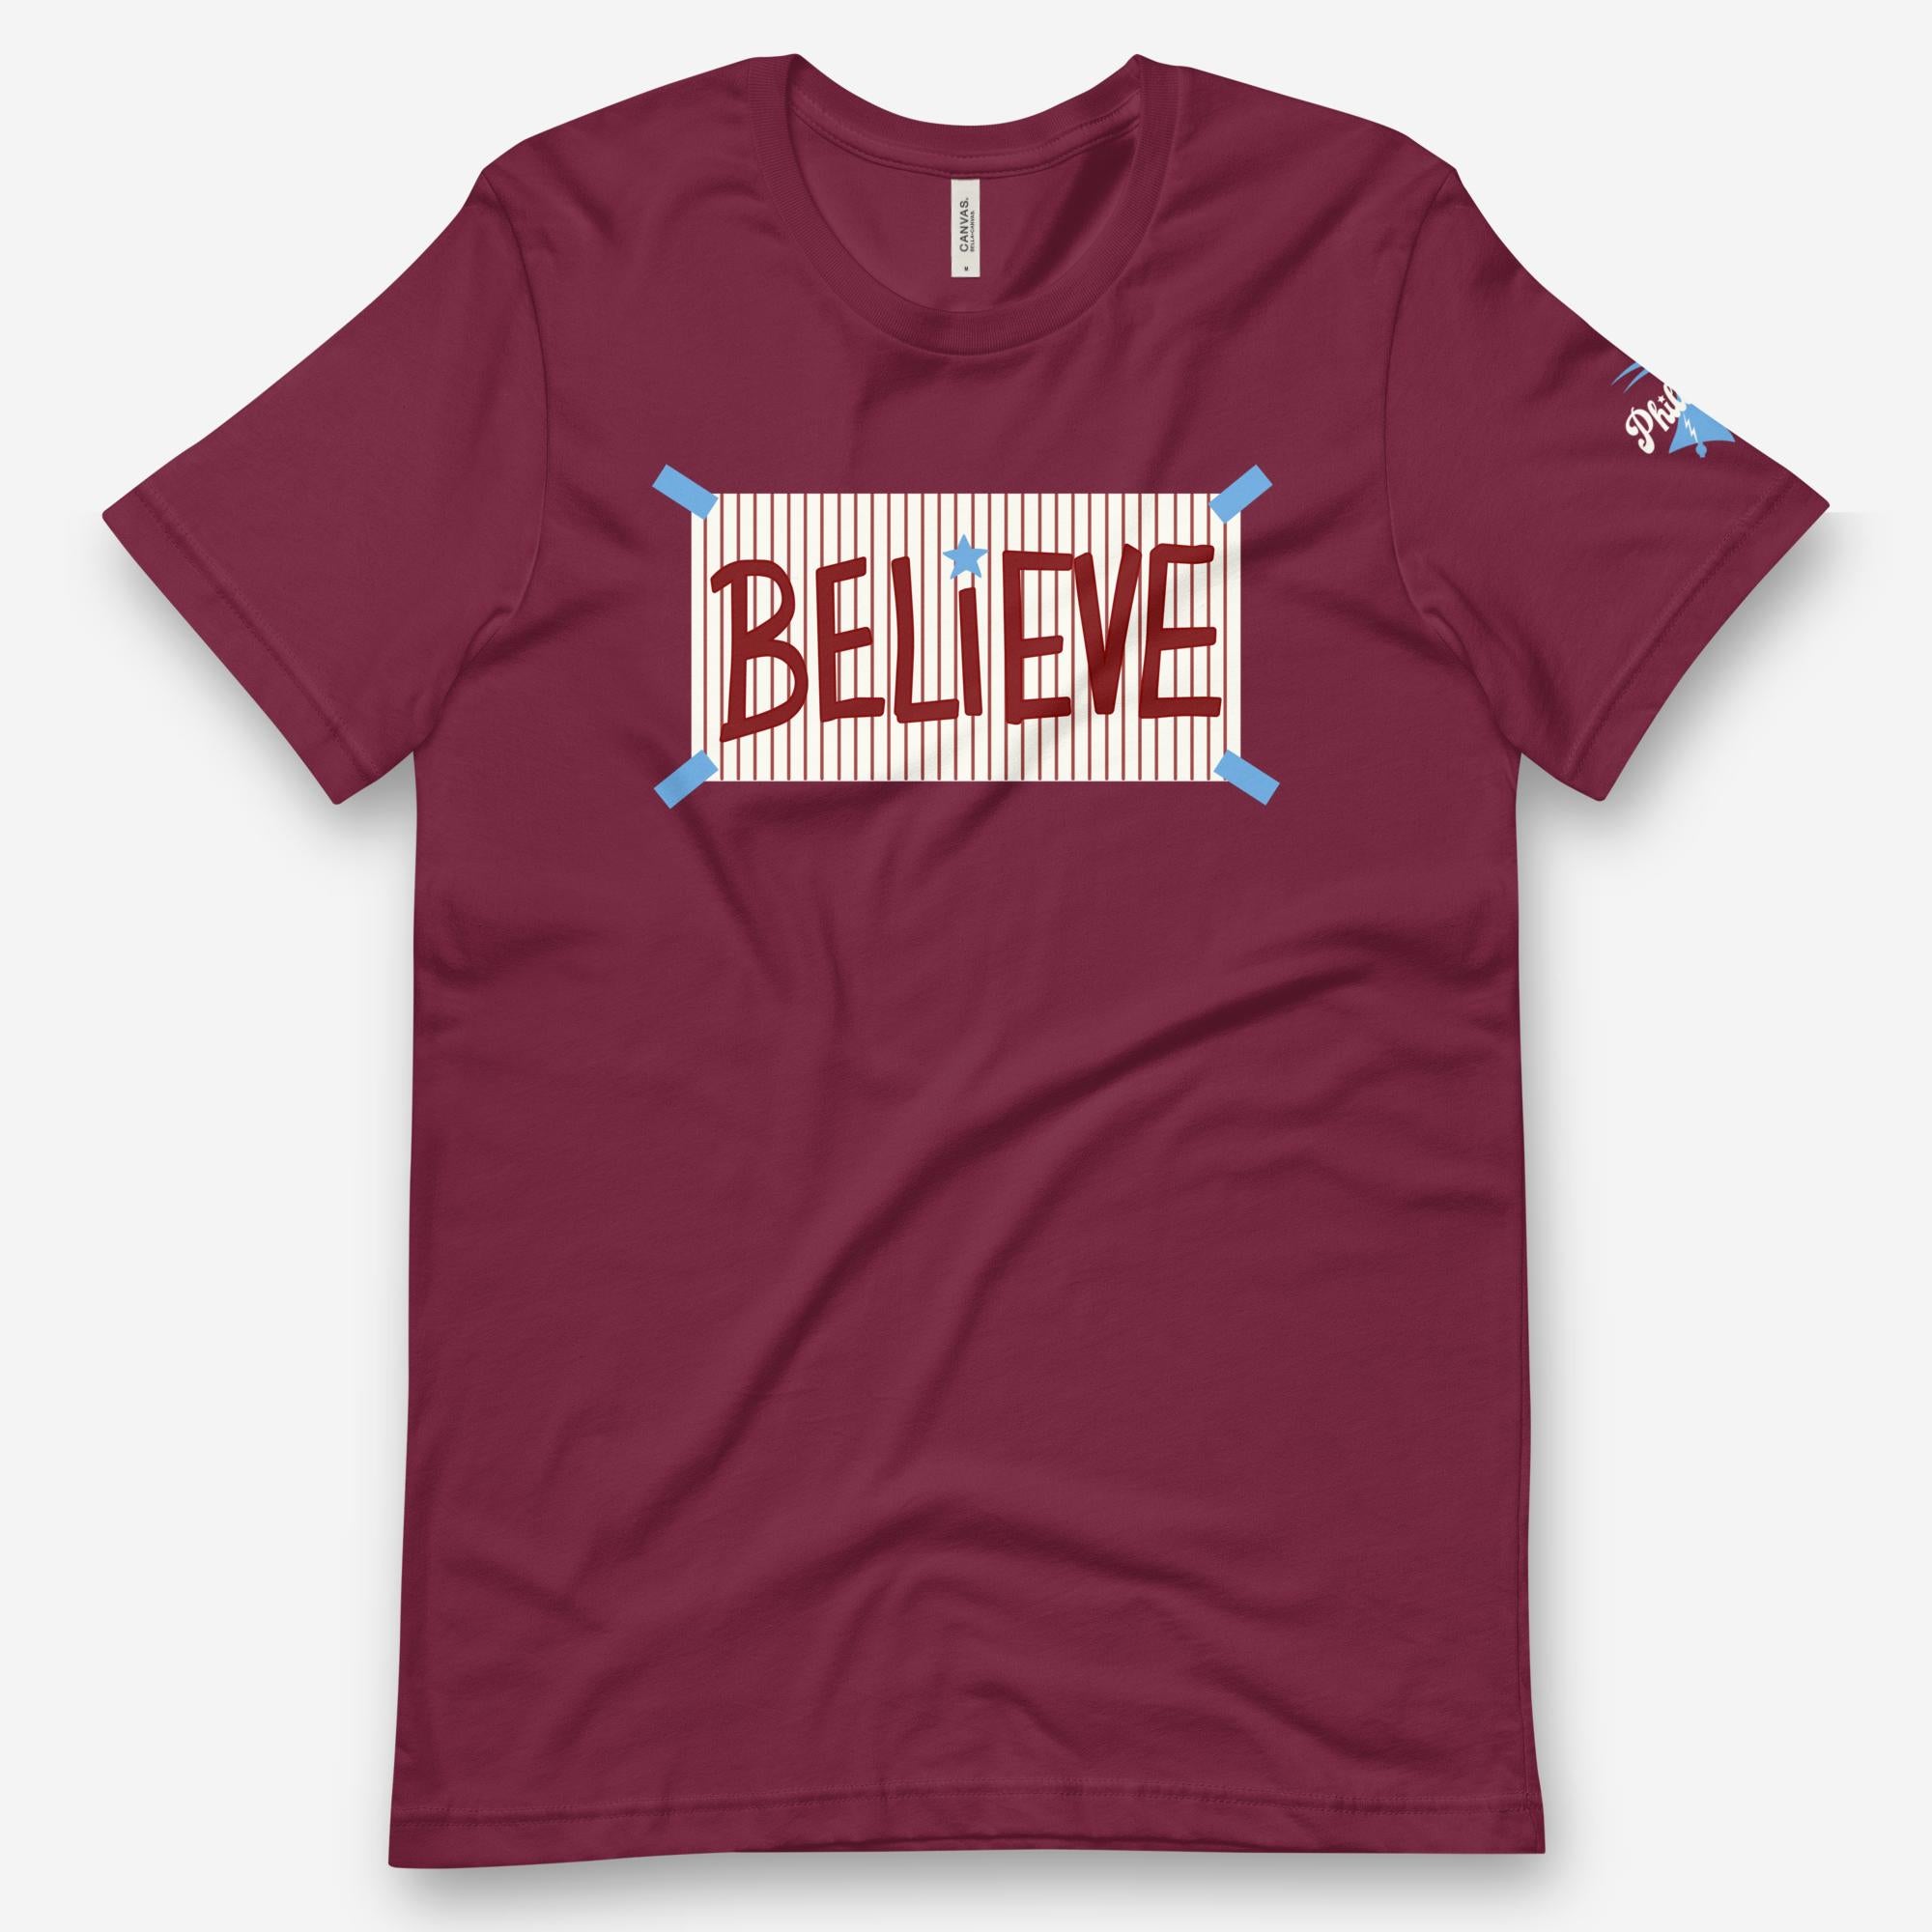 "Believe" Tee